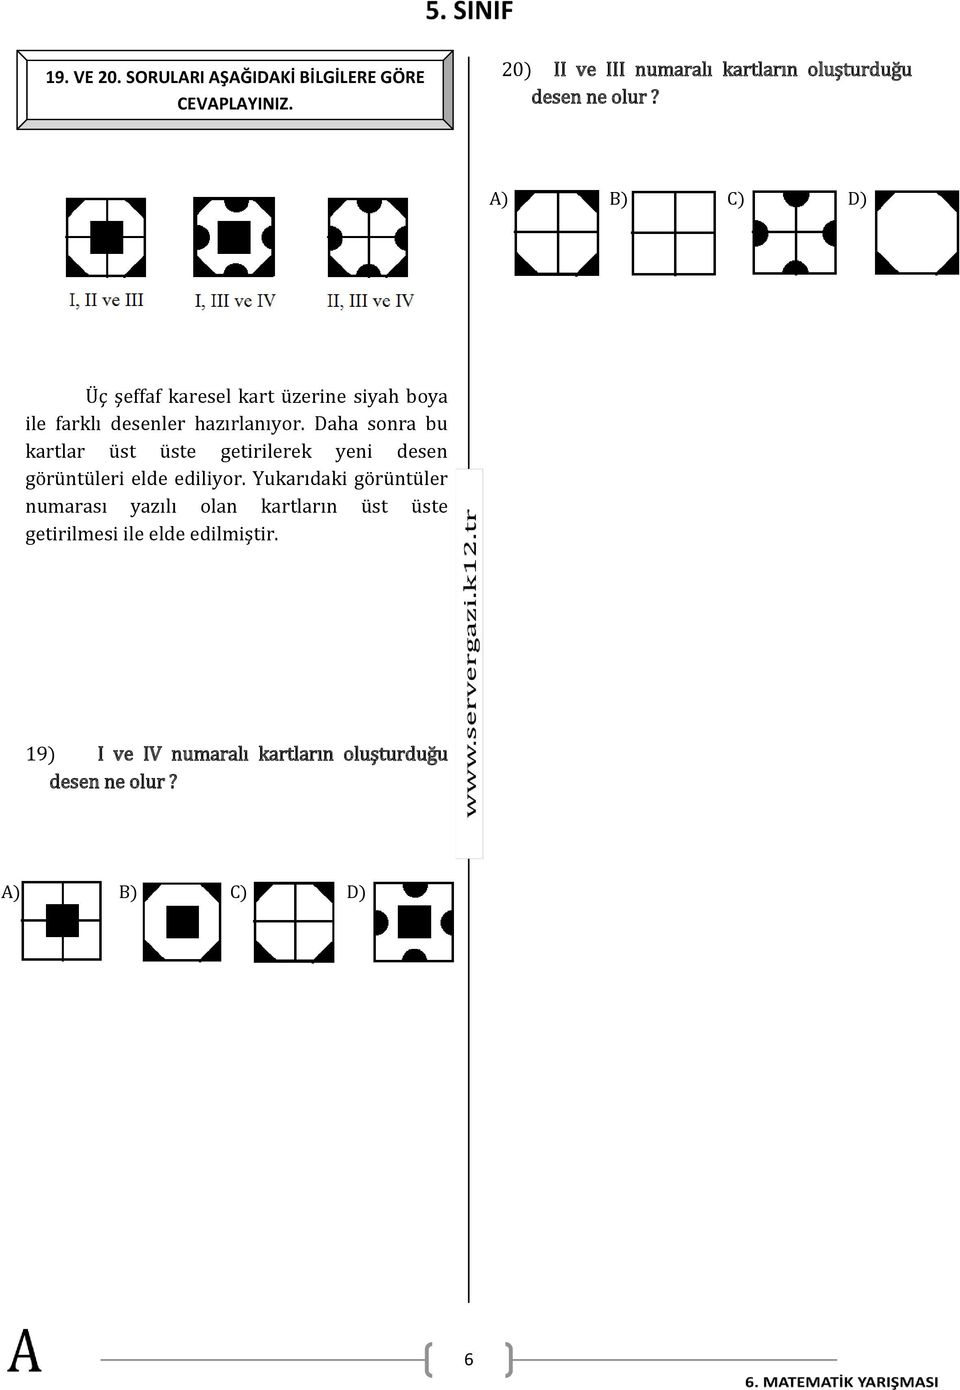 A) B) C) D) Üç şeffaf karesel kart üzerine siyah boya ile farklı desenler hazırlanıyor.